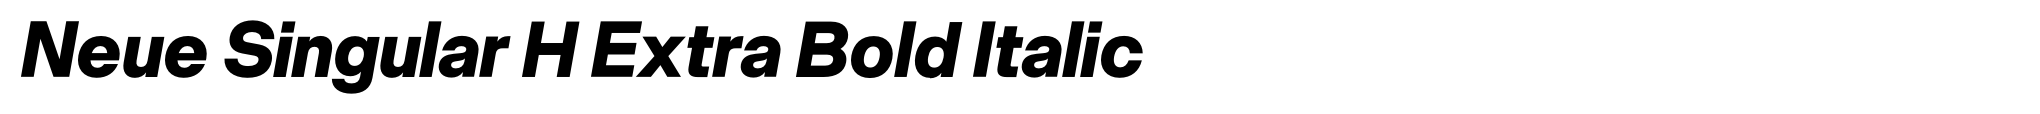 Neue Singular H Extra Bold Italic image